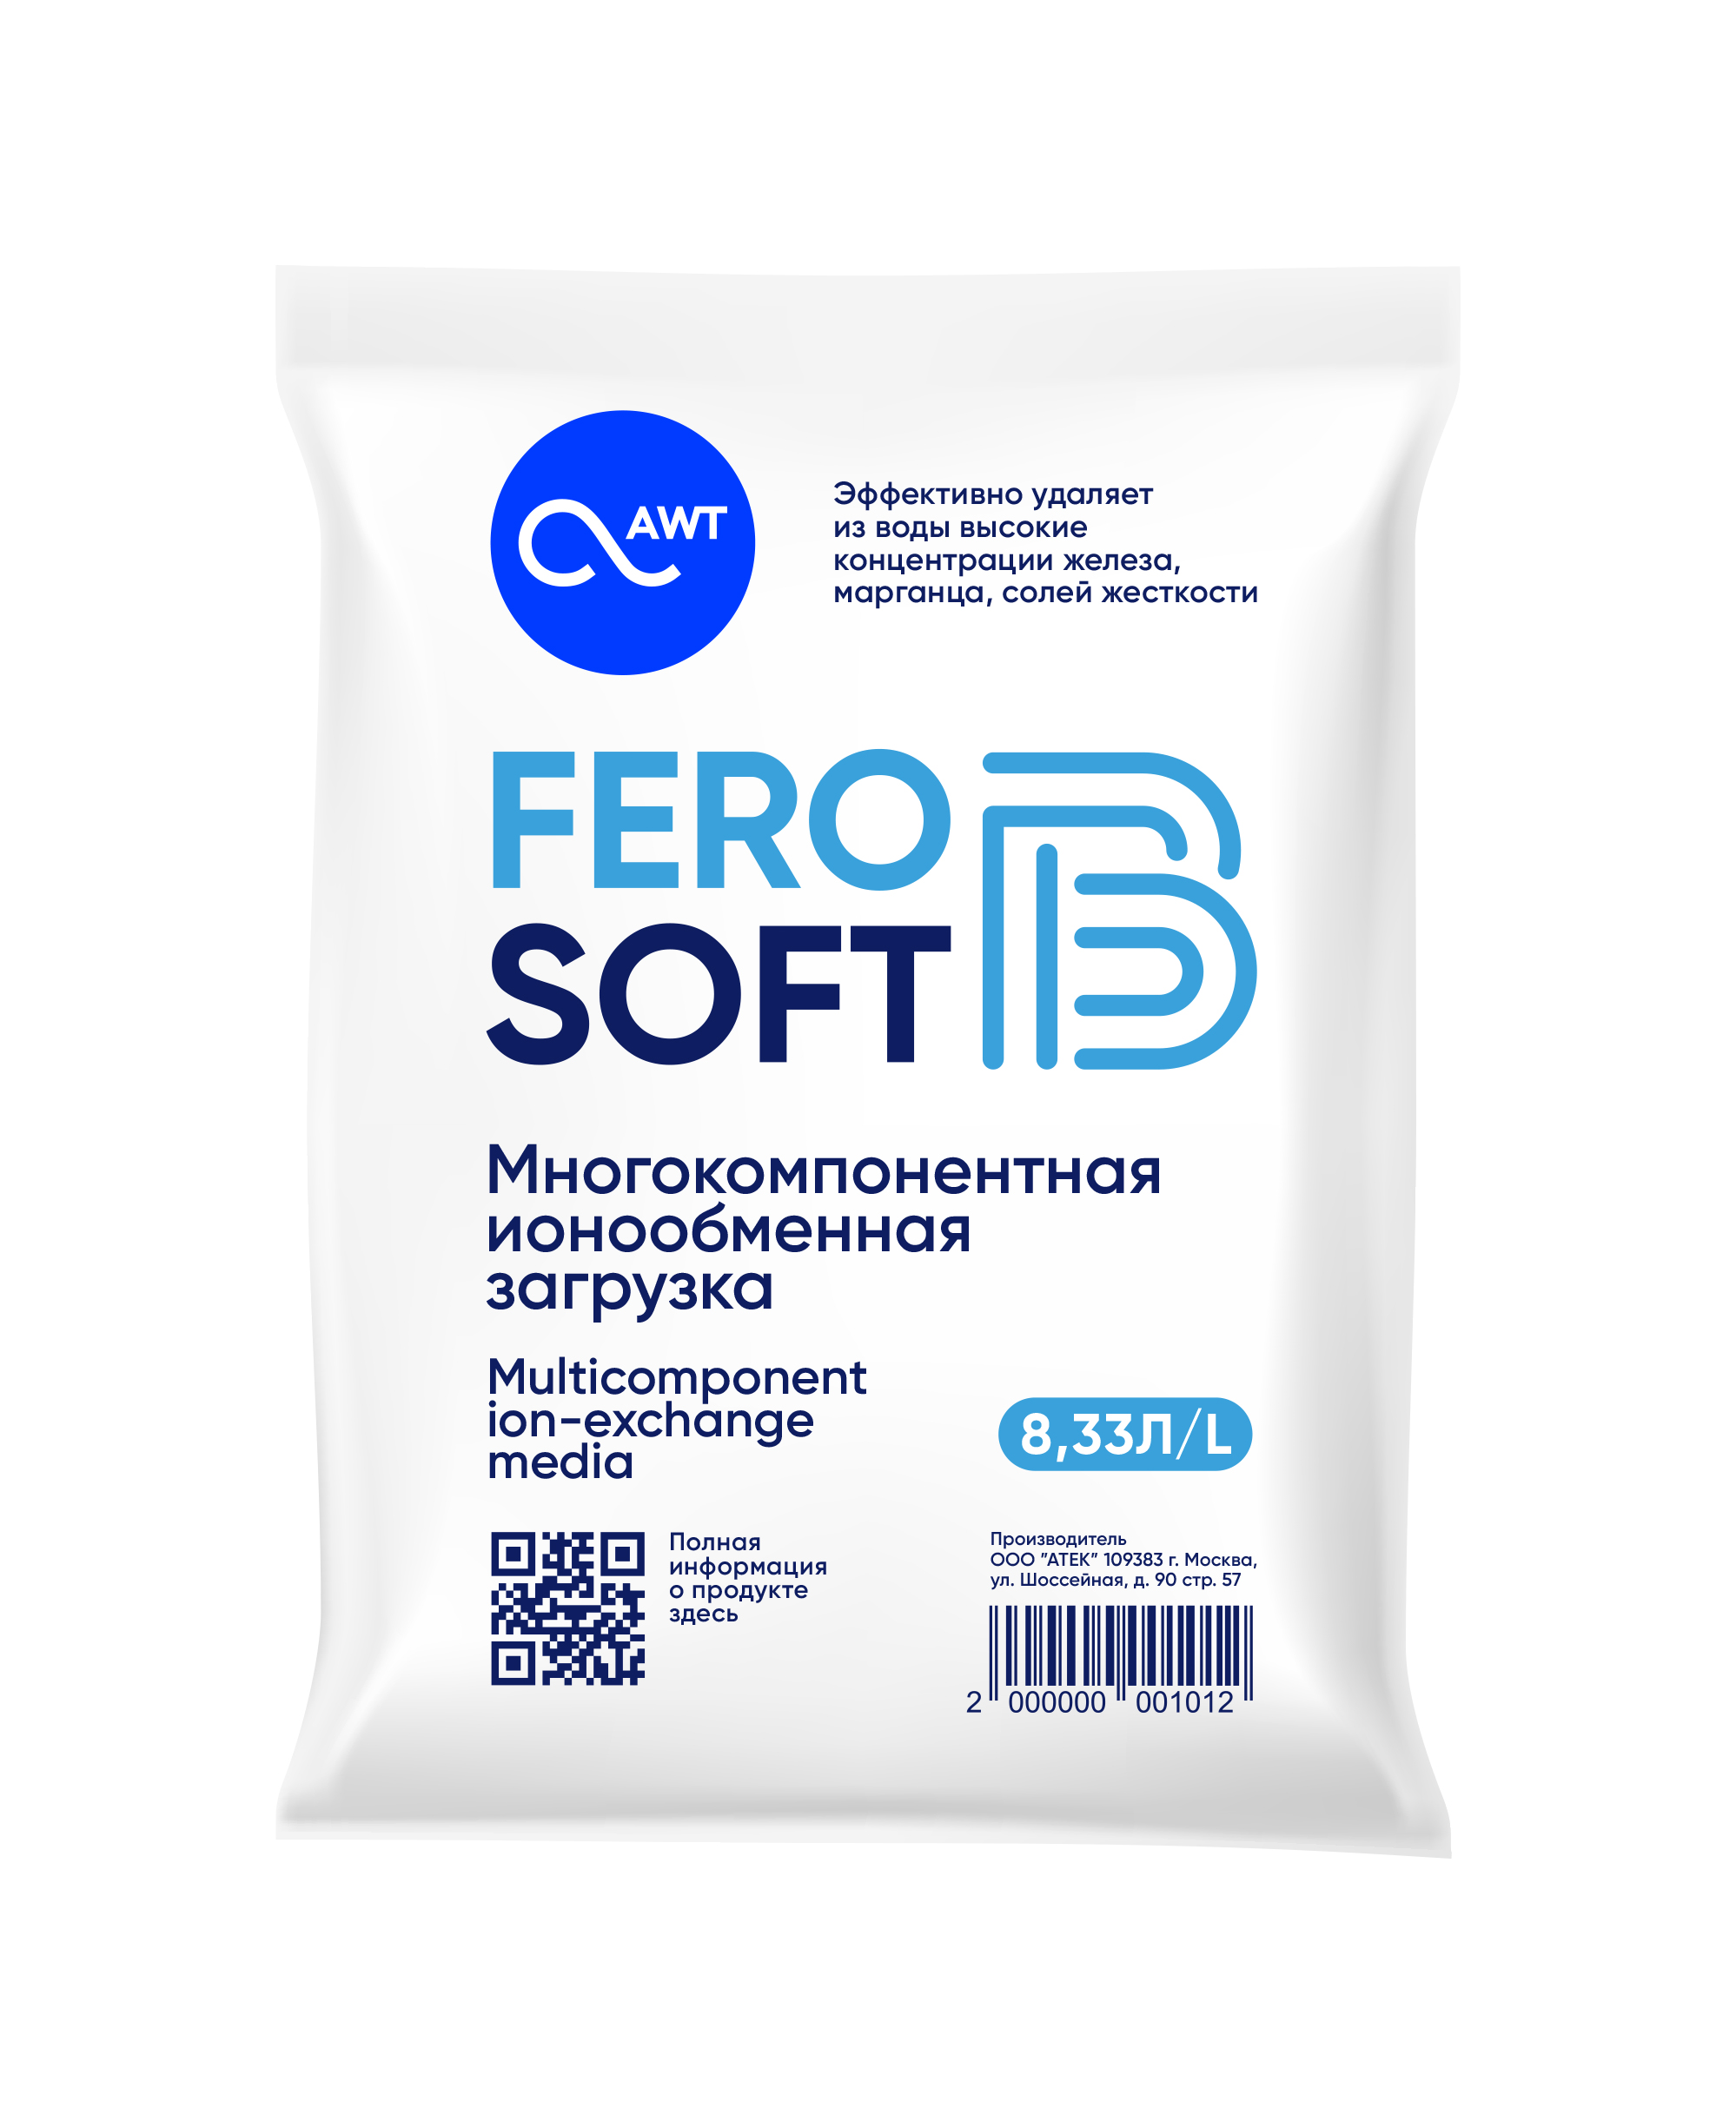  Многокомпонентная загрузка FeroSoft-B (8,33л, 6,7 кг)